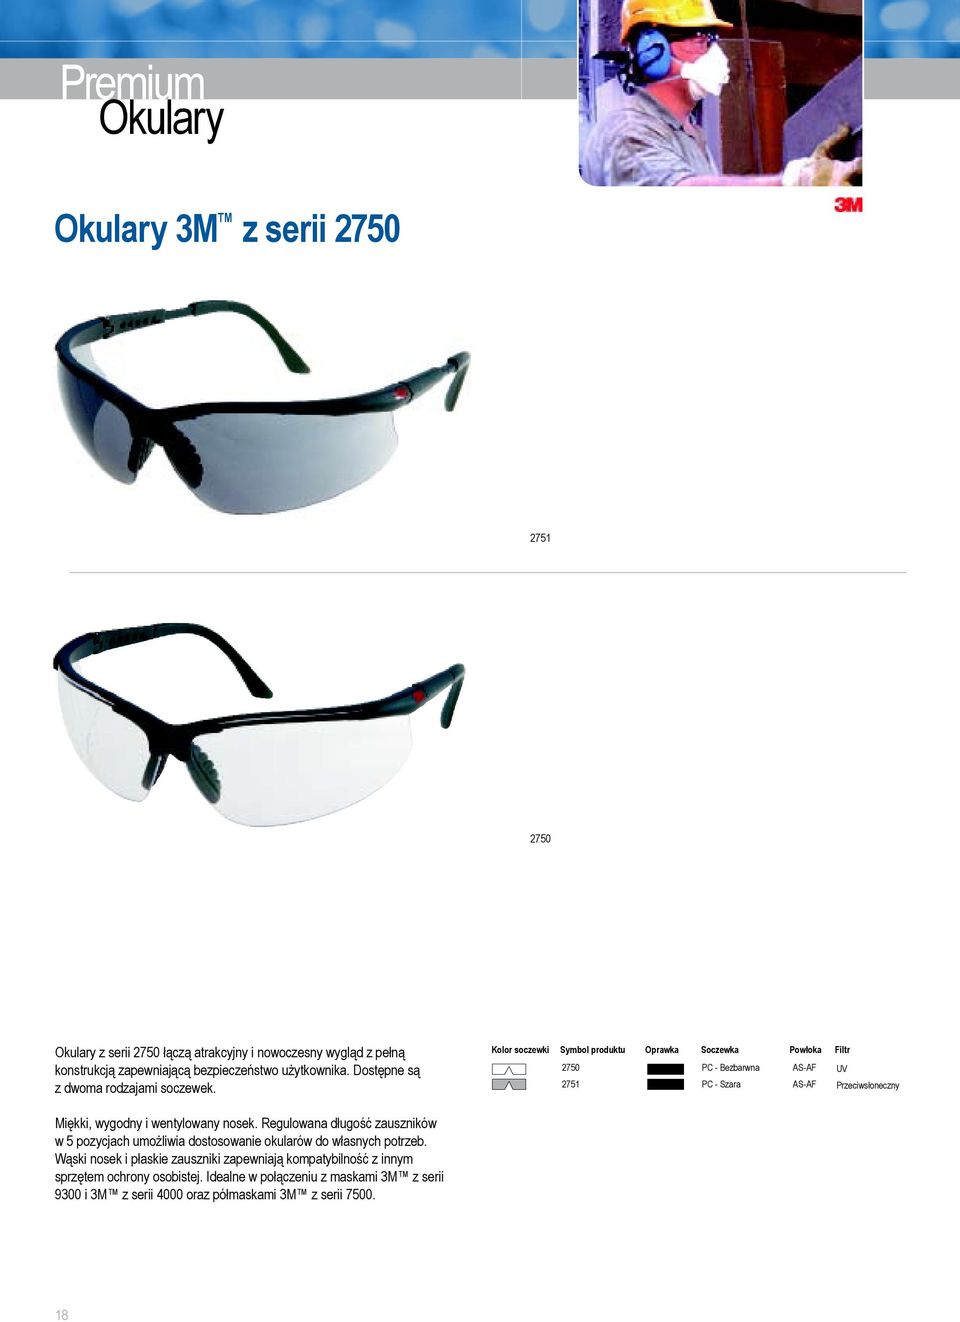 Regulowana długość zauszników w 5 pozycjach umożliwia dostosowanie okularów do własnych potrzeb.